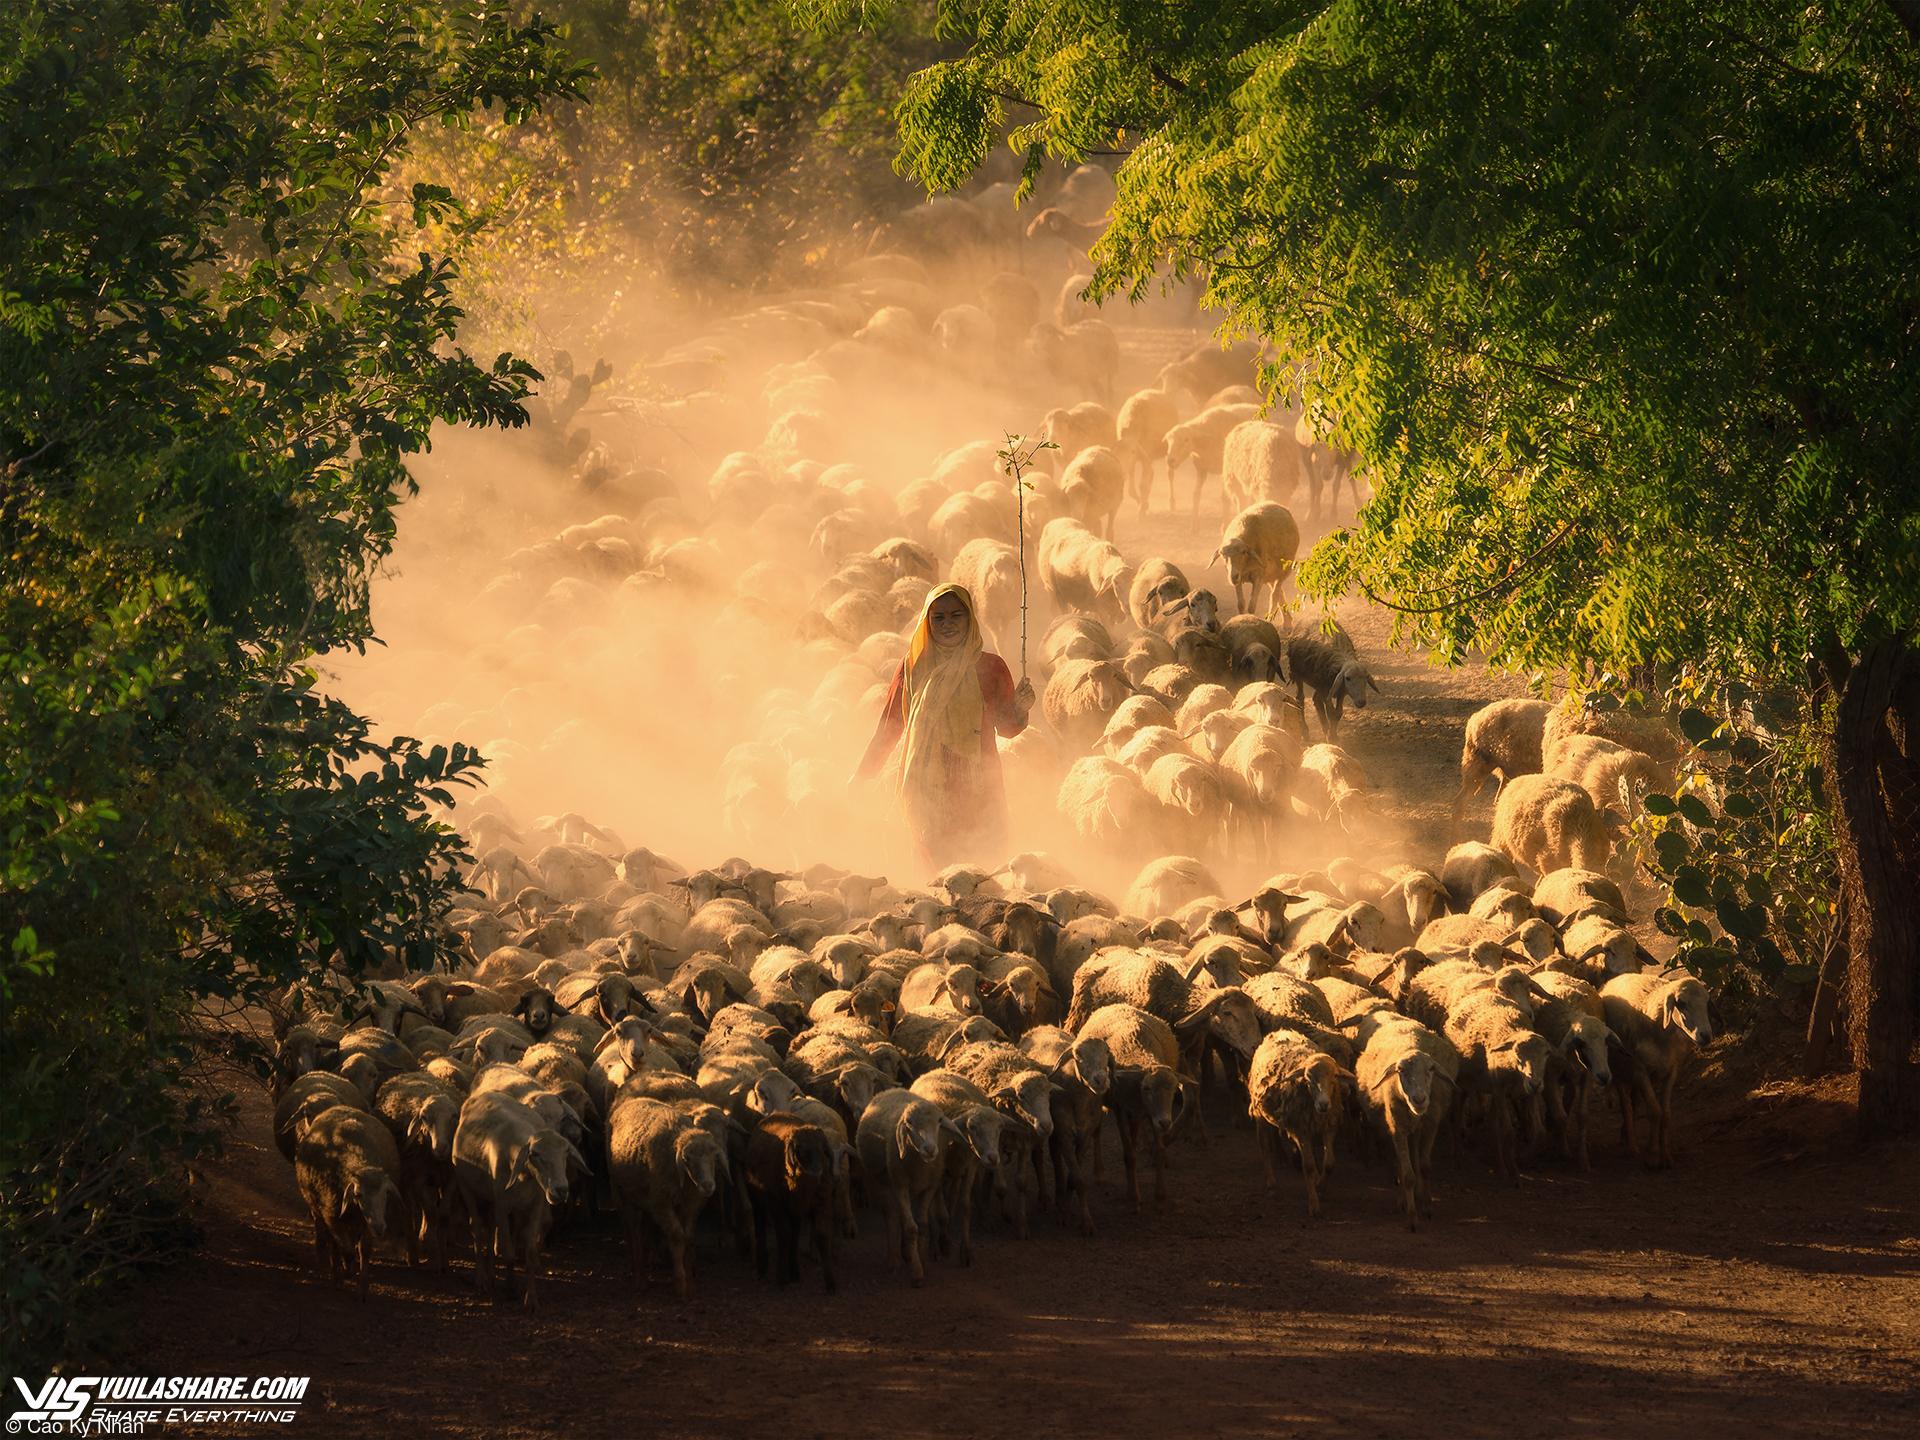 Chàng trai Việt giành giải thưởng cuộc thi ảnh quốc tế nhờ tài 'săn' cừu- Ảnh 1.